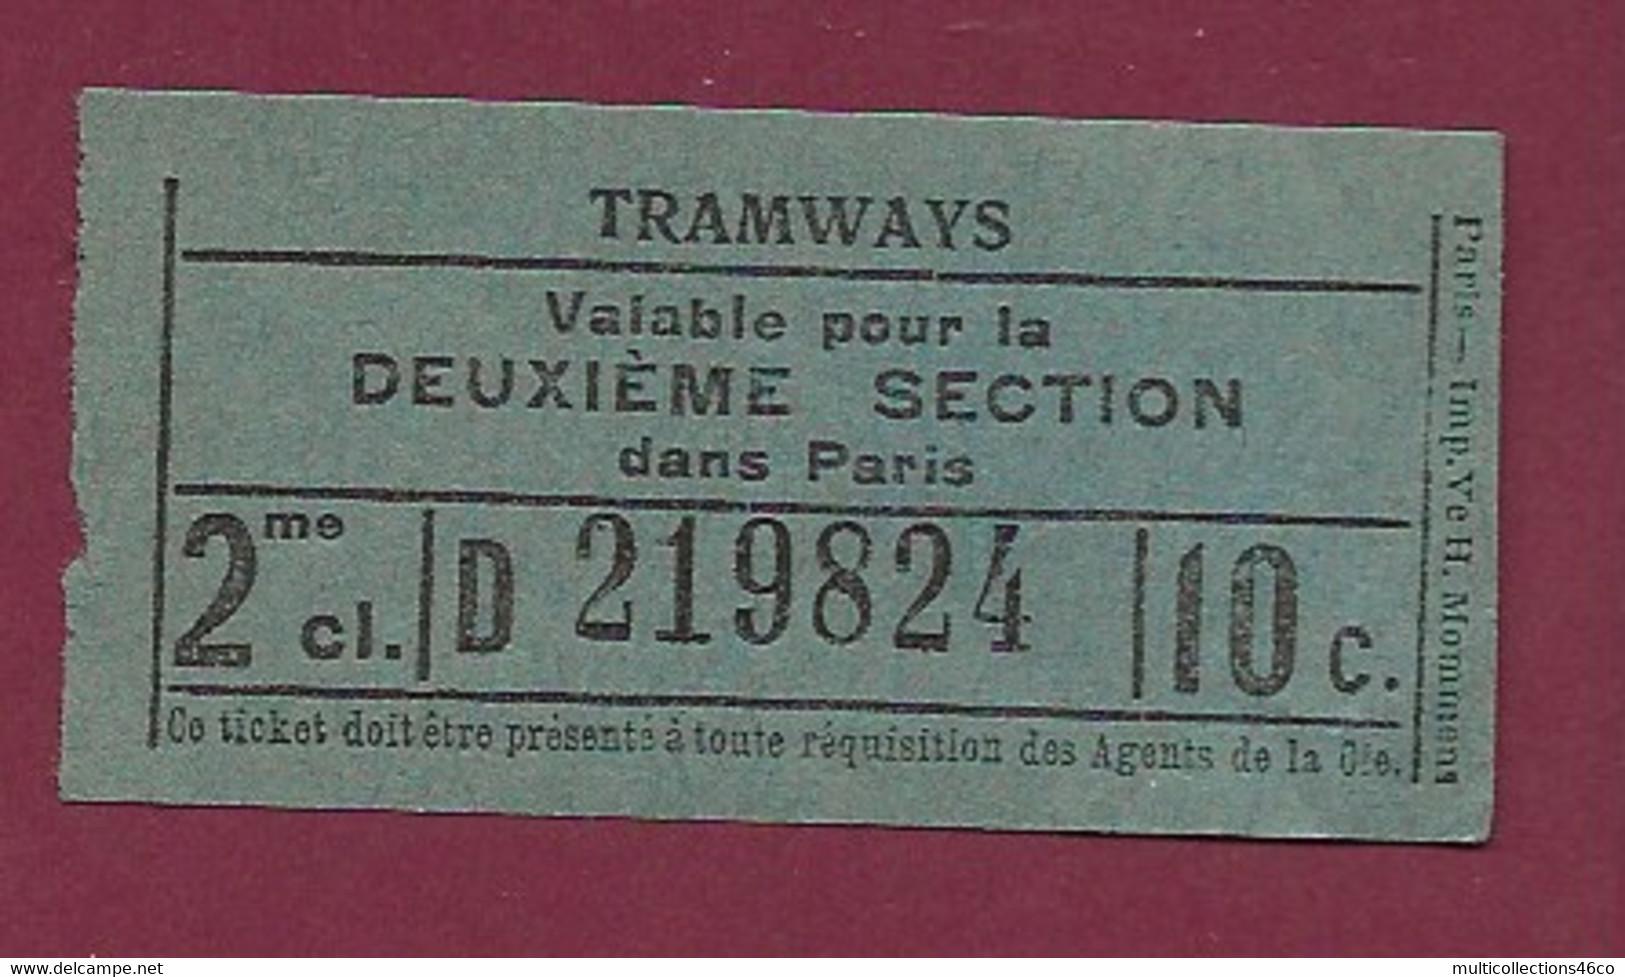 171020 - TICKET TRAMWAYS Valable Pour La Deuxième Section Dans Paris 2me Cl. D219824 10c - Europa